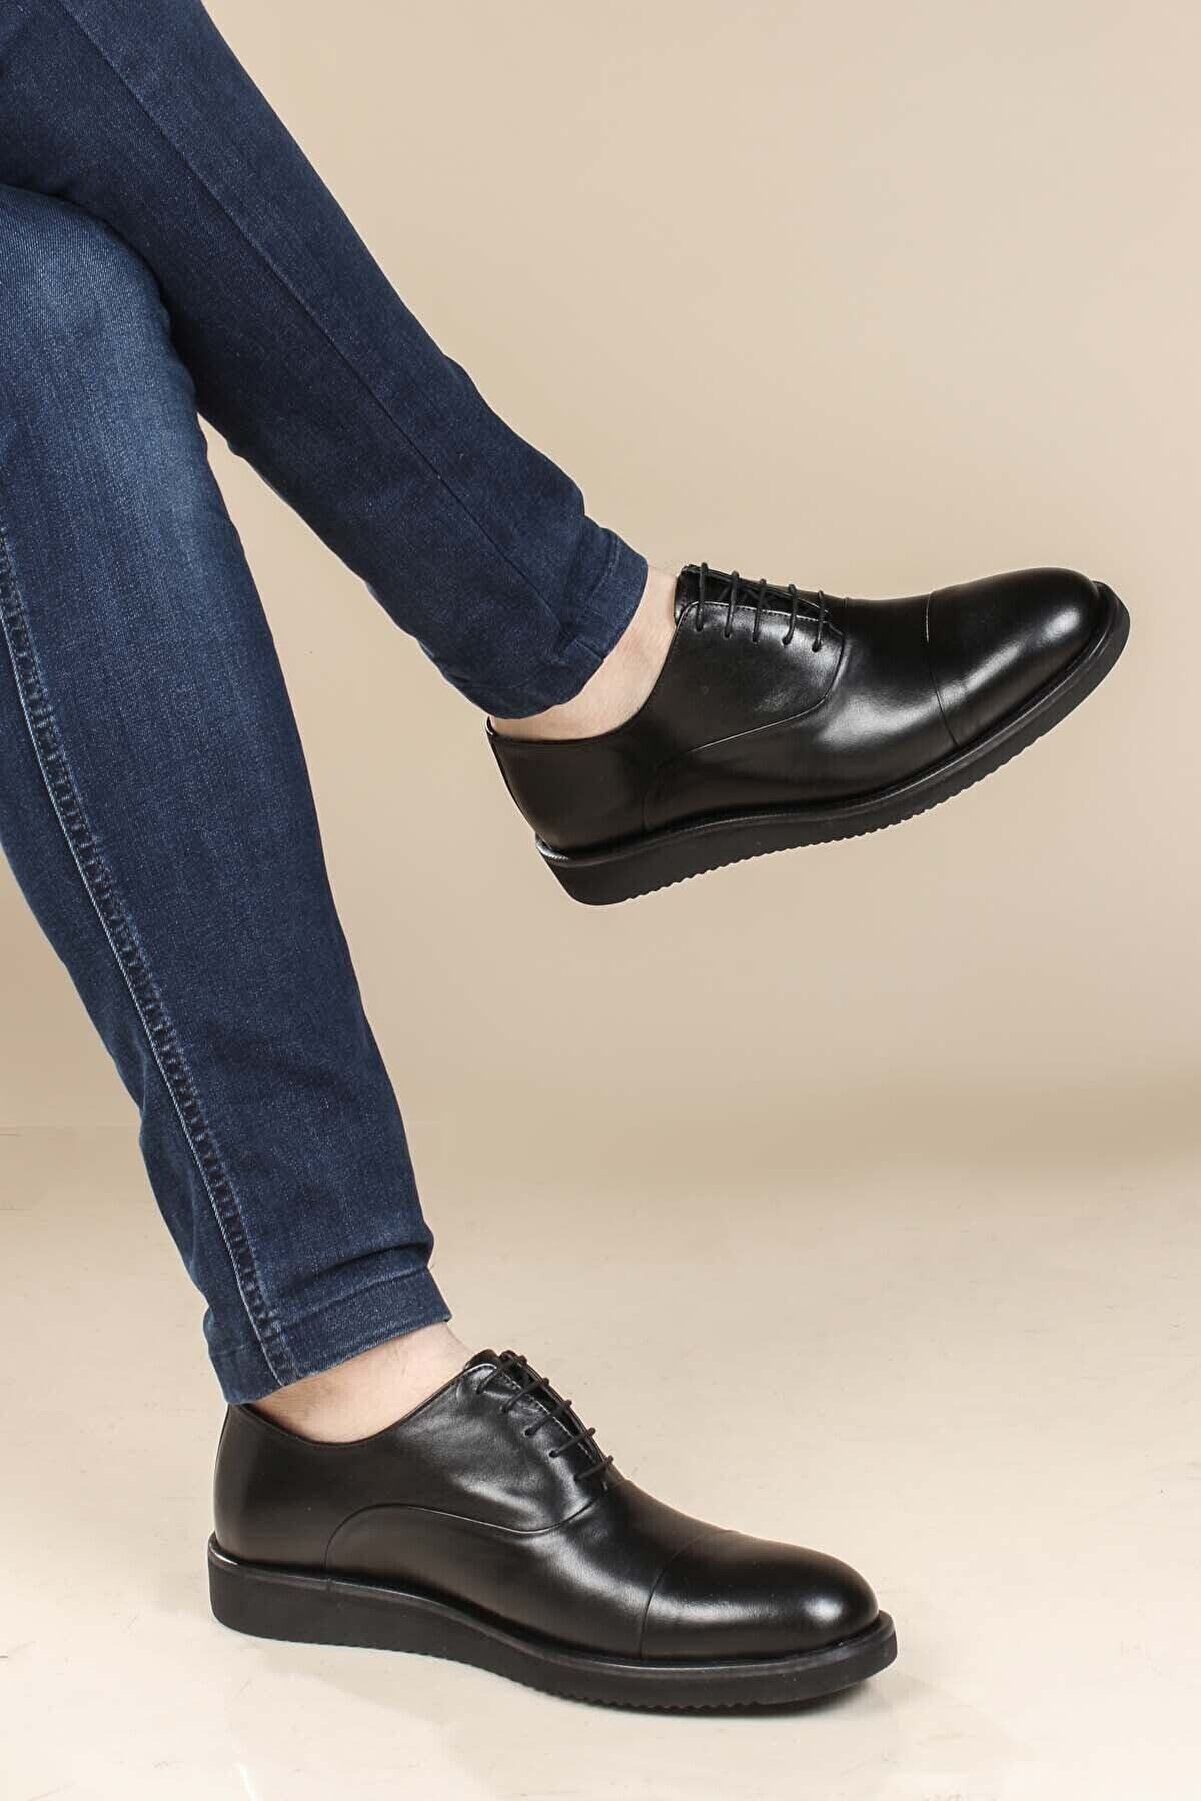 Fast Step Hakiki Deri Siyah Bağcıklı Rahat Tabanlı Erkek Oxford Klasik Ayakkabı 822ma052